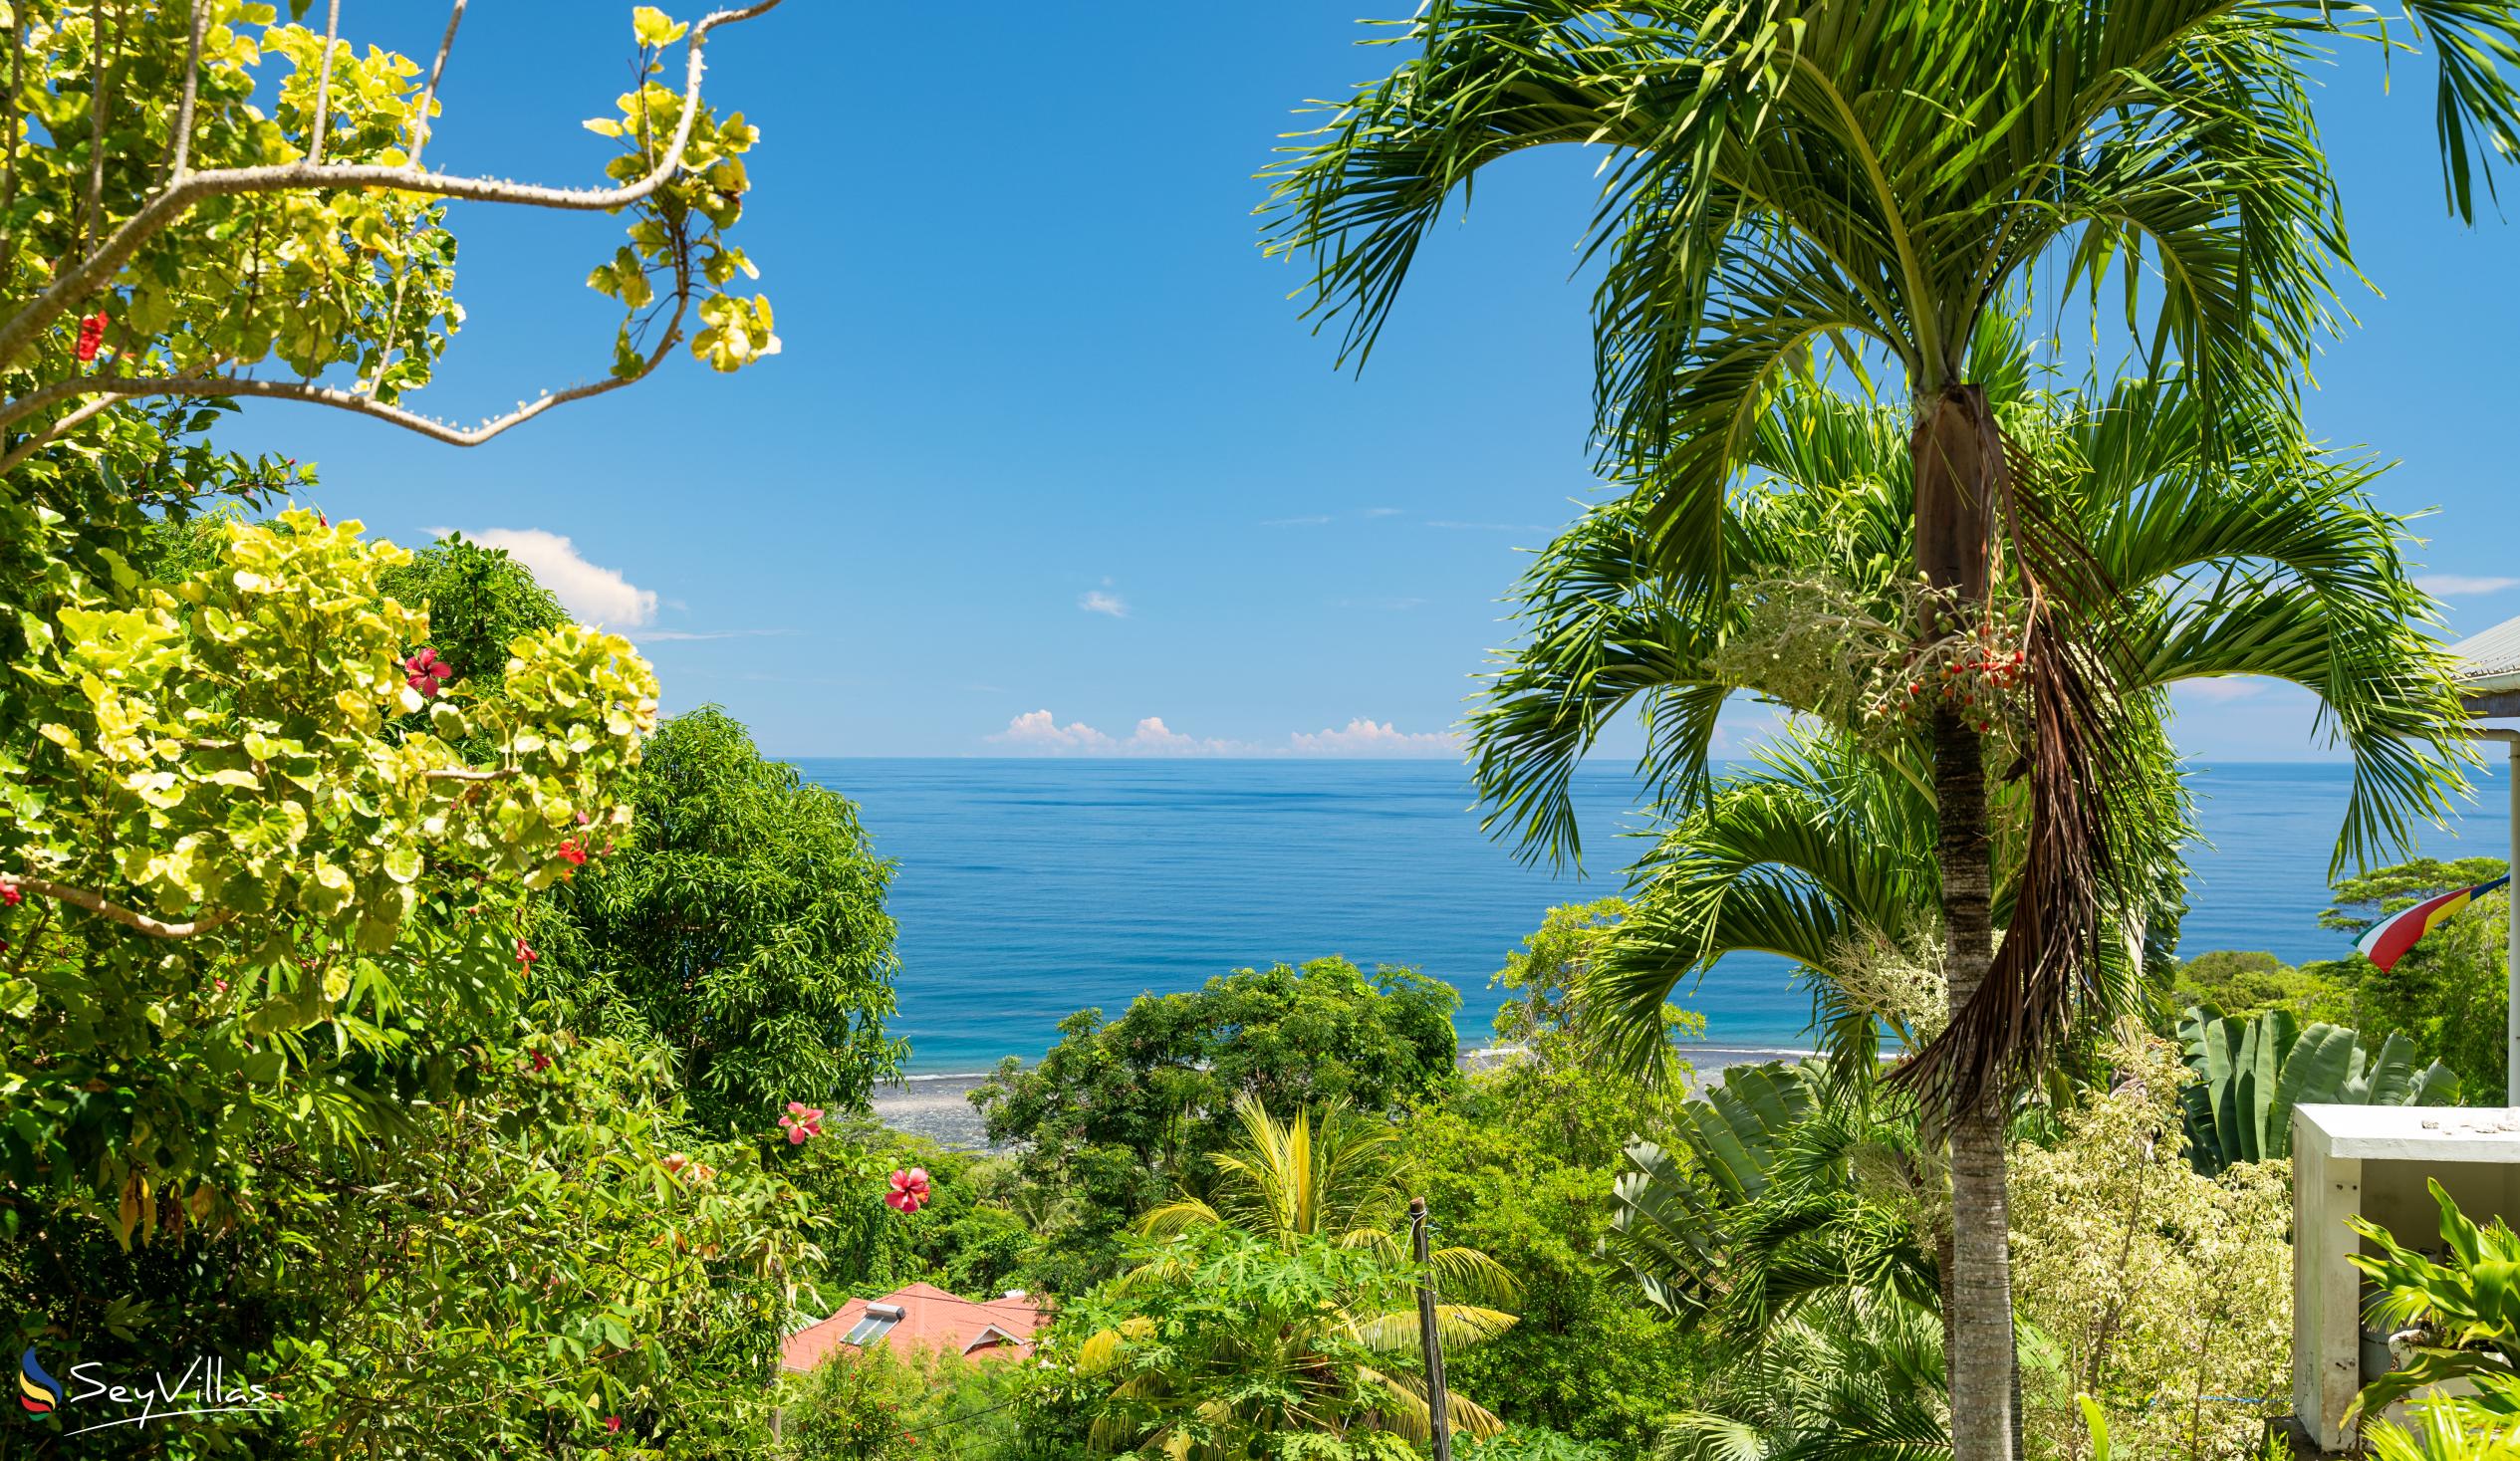 Foto 6: Hilltop Villa Bougainville - Aussenbereich - Mahé (Seychellen)